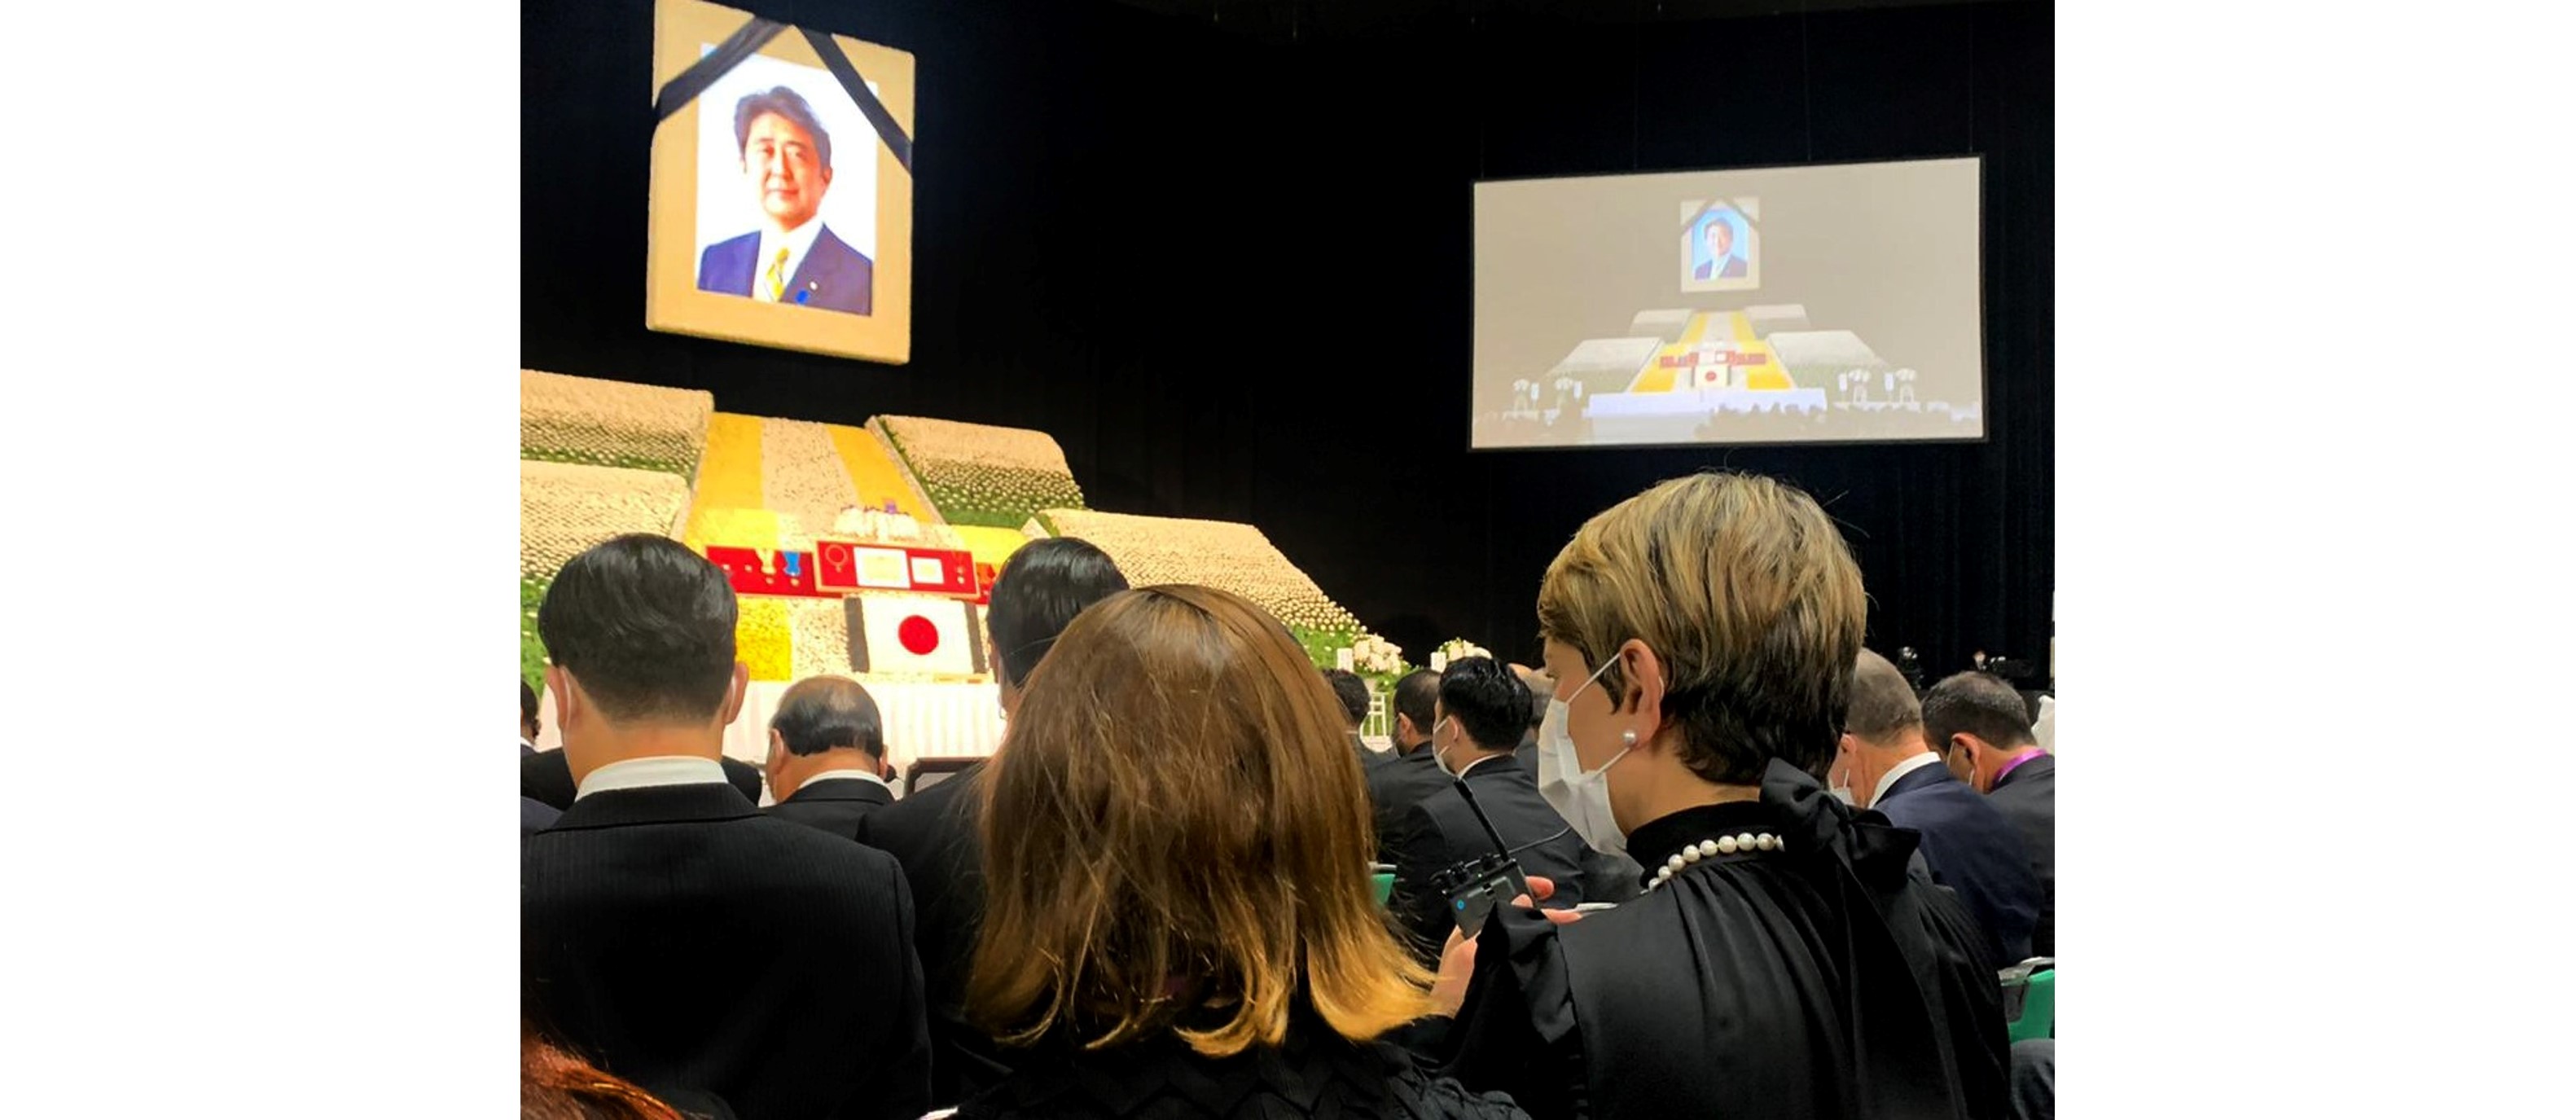 Primera Dama de la Nación representó a Colombia en ceremonia fúnebre organizada por el Estado Japonés en memoria del Ex Primer Ministro, Shintzo Abe